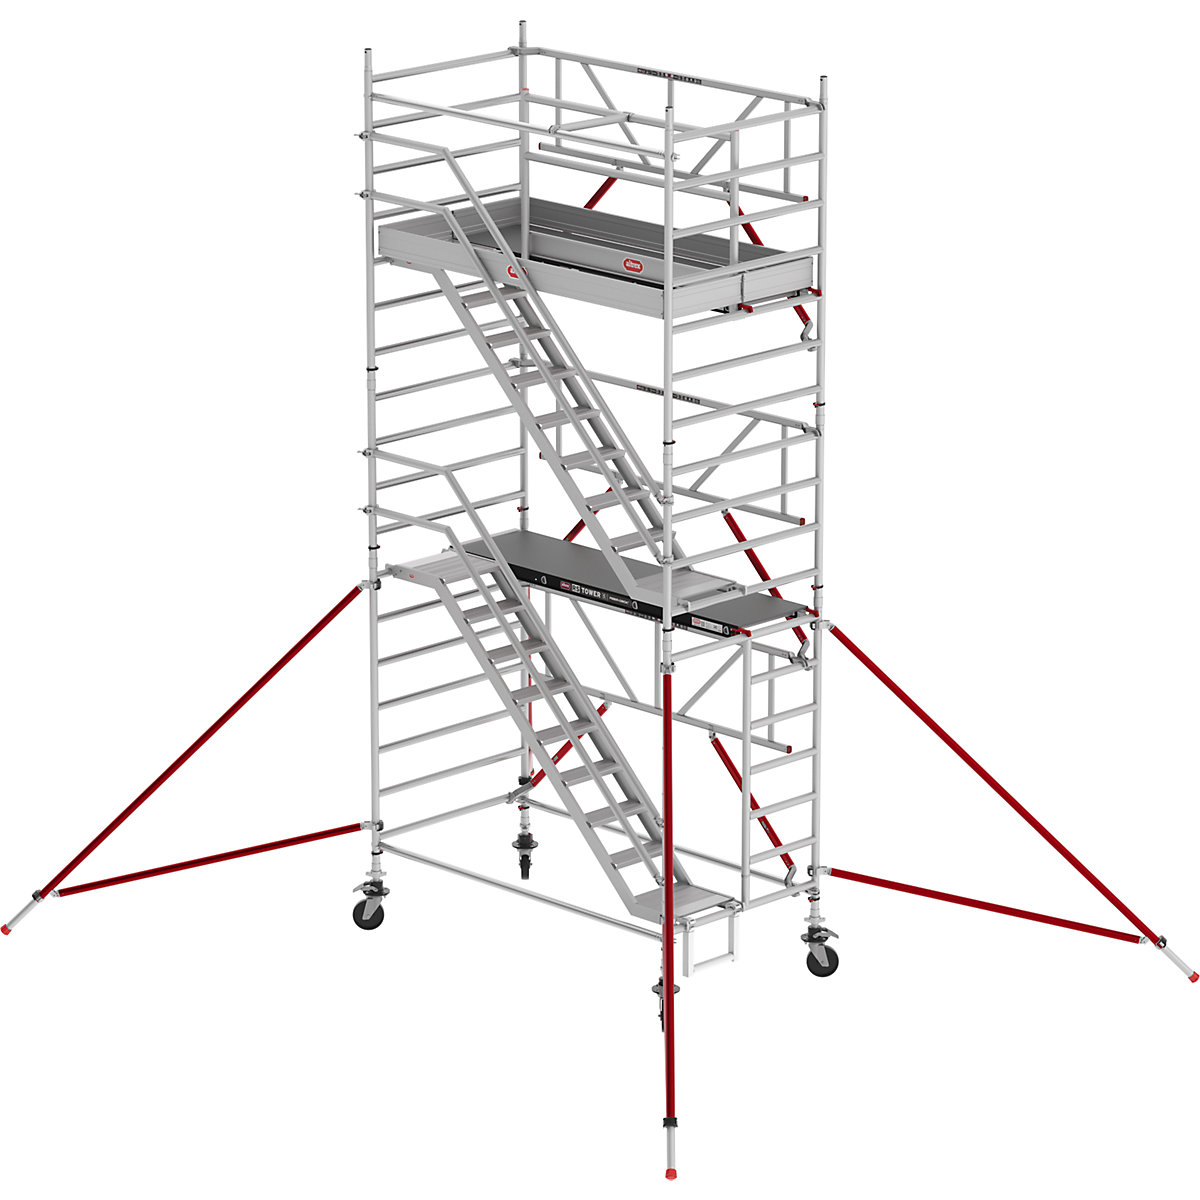 Treppengerüst RS TOWER 53 breit Altrex, Fiber-Deck®, Länge 1,85 m, Arbeitshöhe 6,20 m